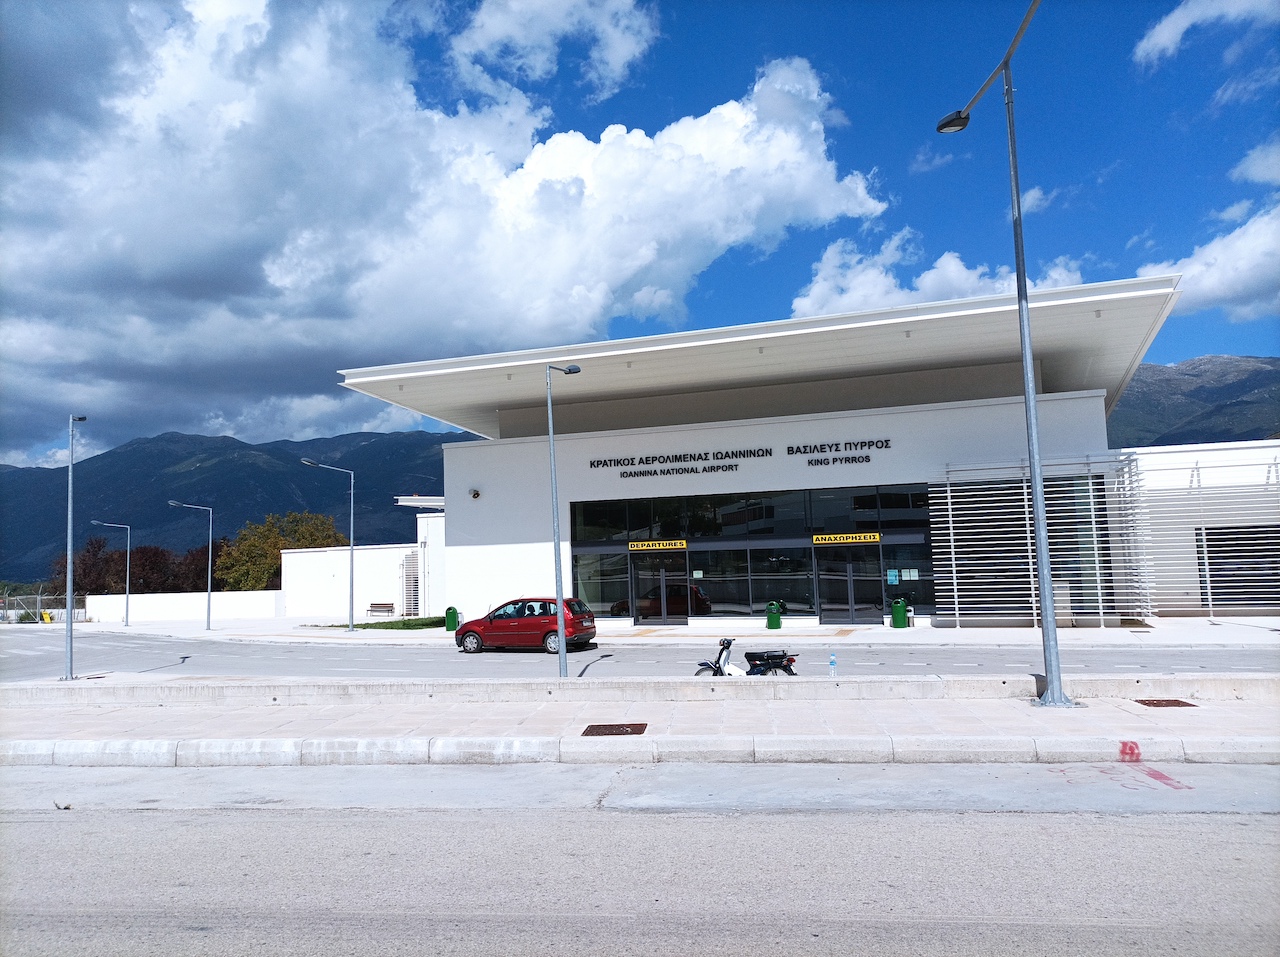 Nuovo collegamento internazionale per l’aeroporto di Ioannina: voli charter con due città italiane